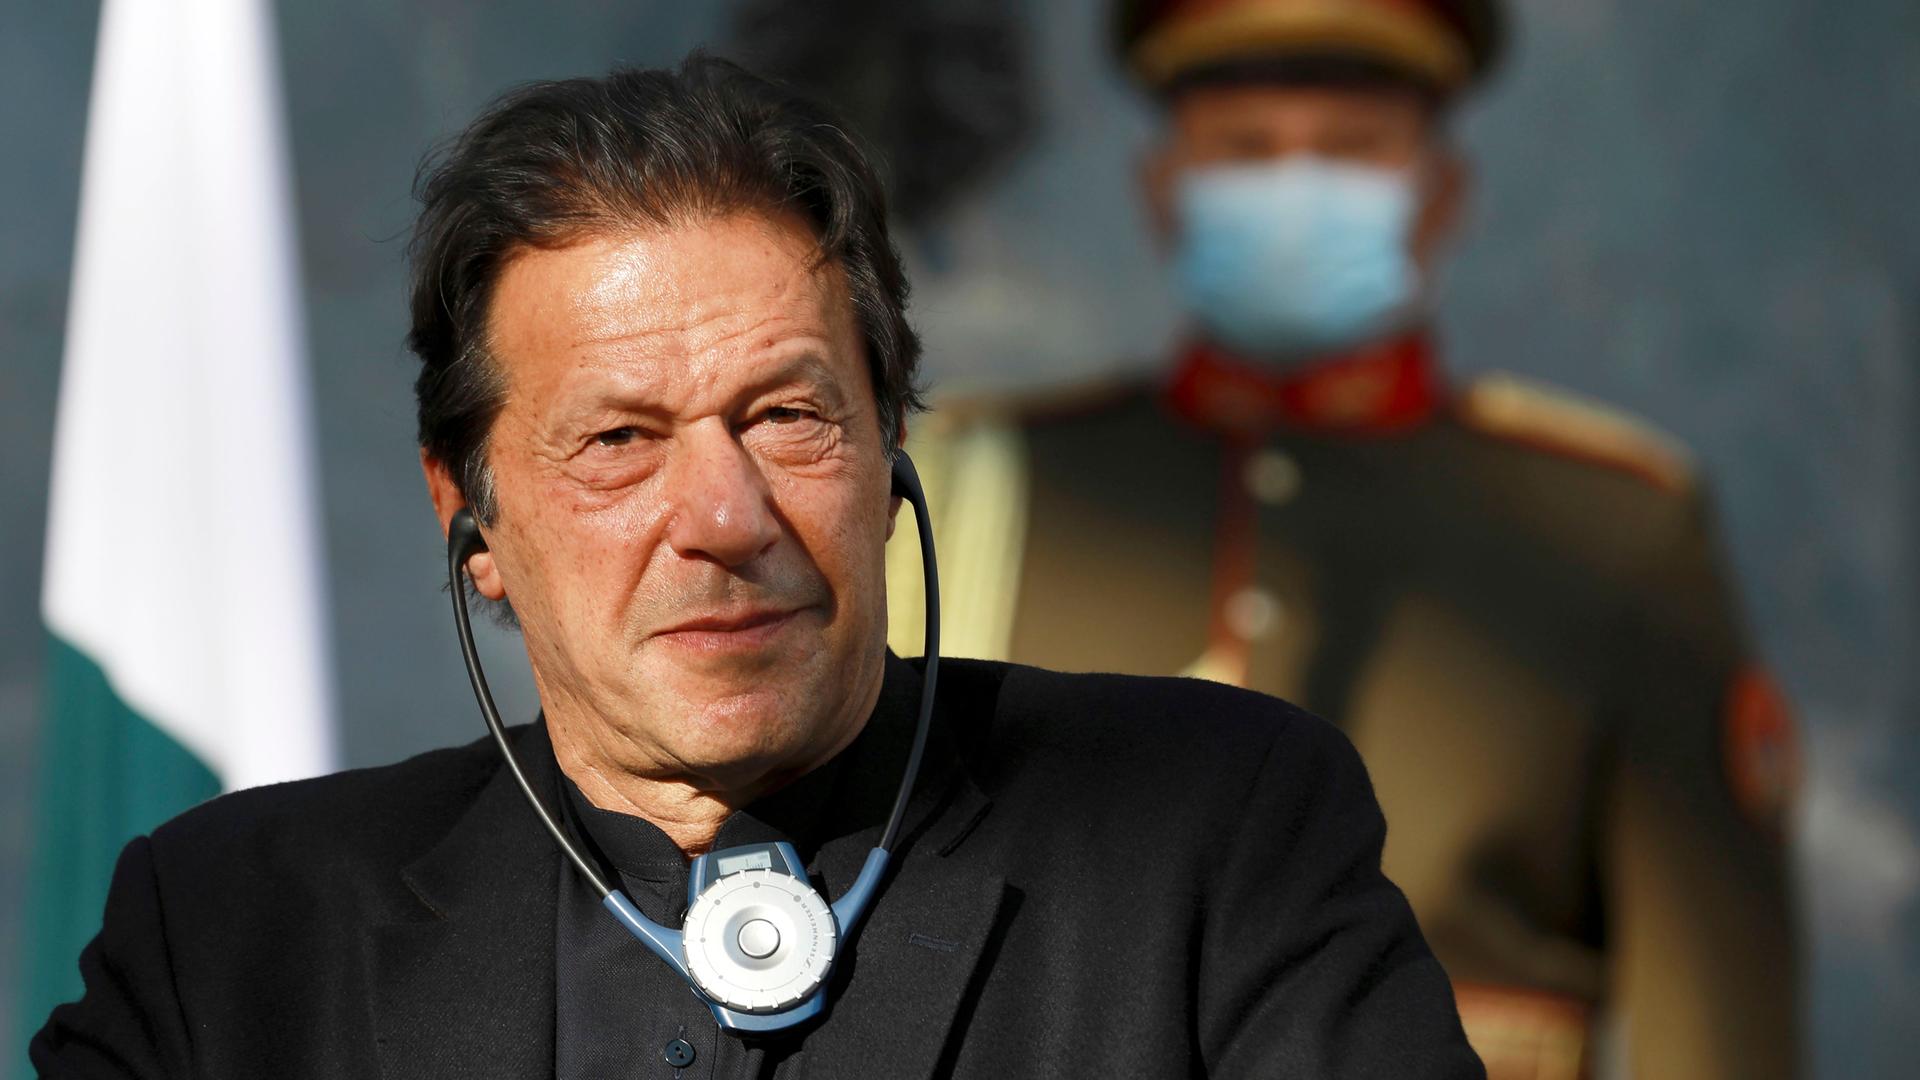 Der frühere pakistanische Premierminister Imran Khan hat Köpfhörer an und hört einer Übersetzung zu. Im Hintergund verschwommen ein Polizist.